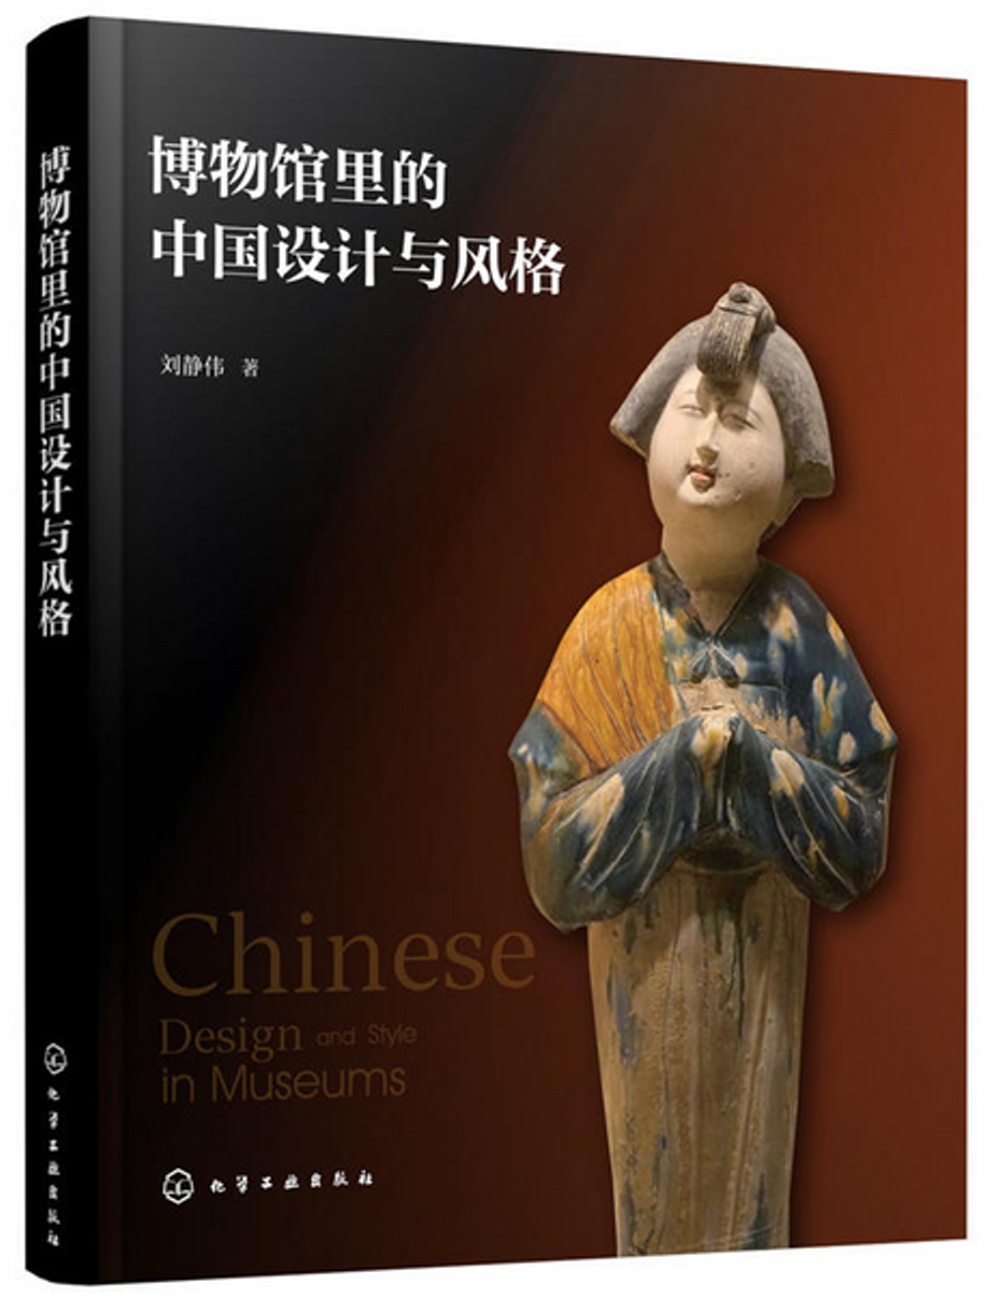 博物館里的中國設計與風格